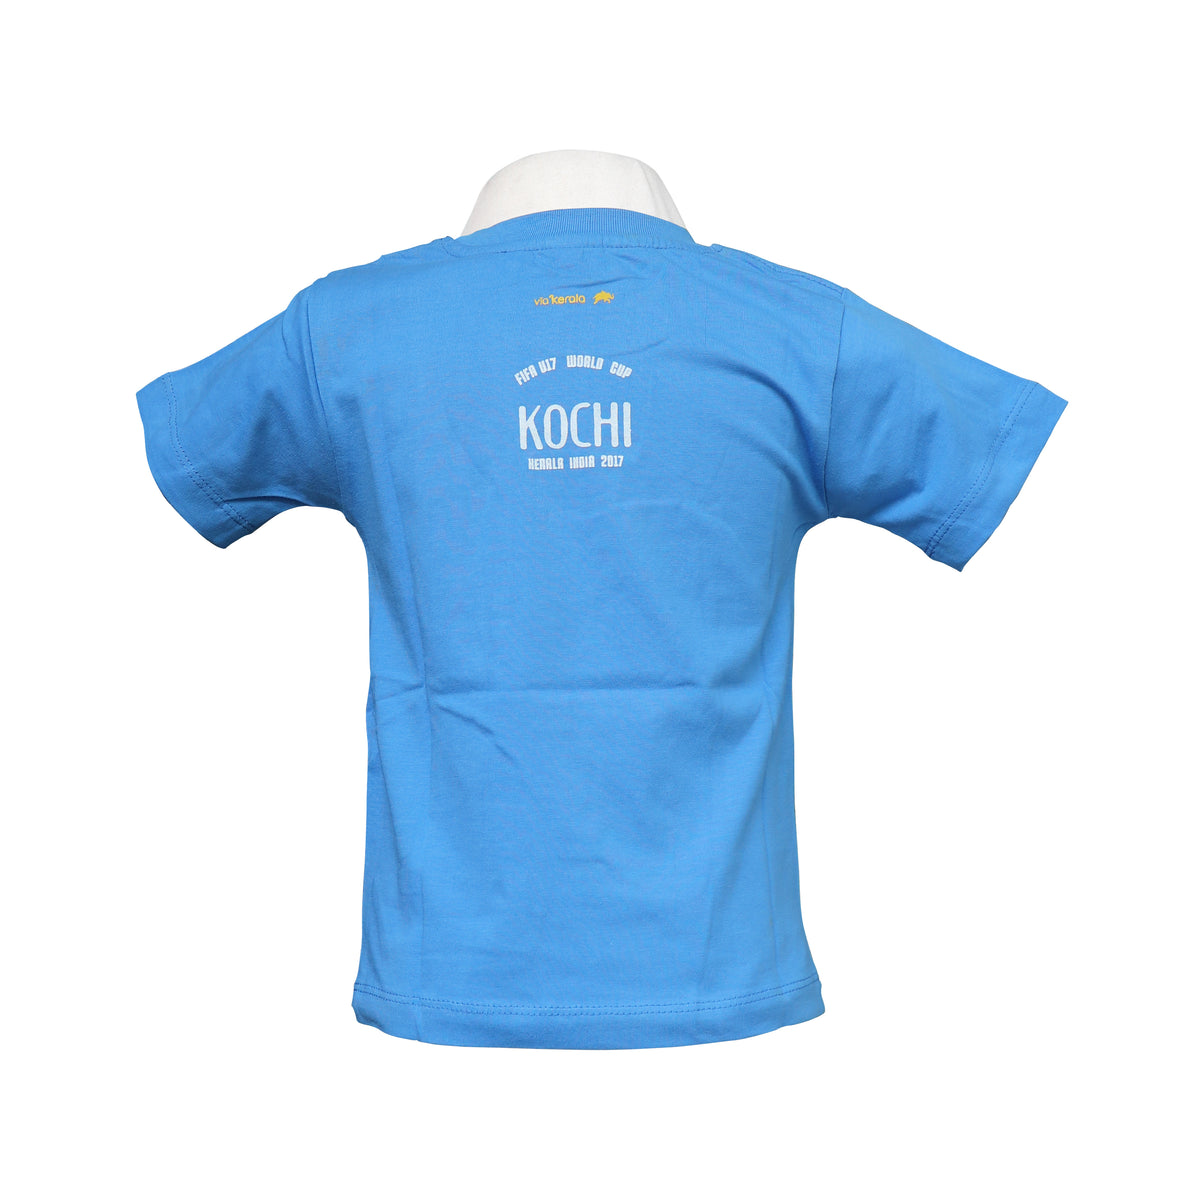 FIFA World Cup Football — Kids T-shirt (Light Blue)